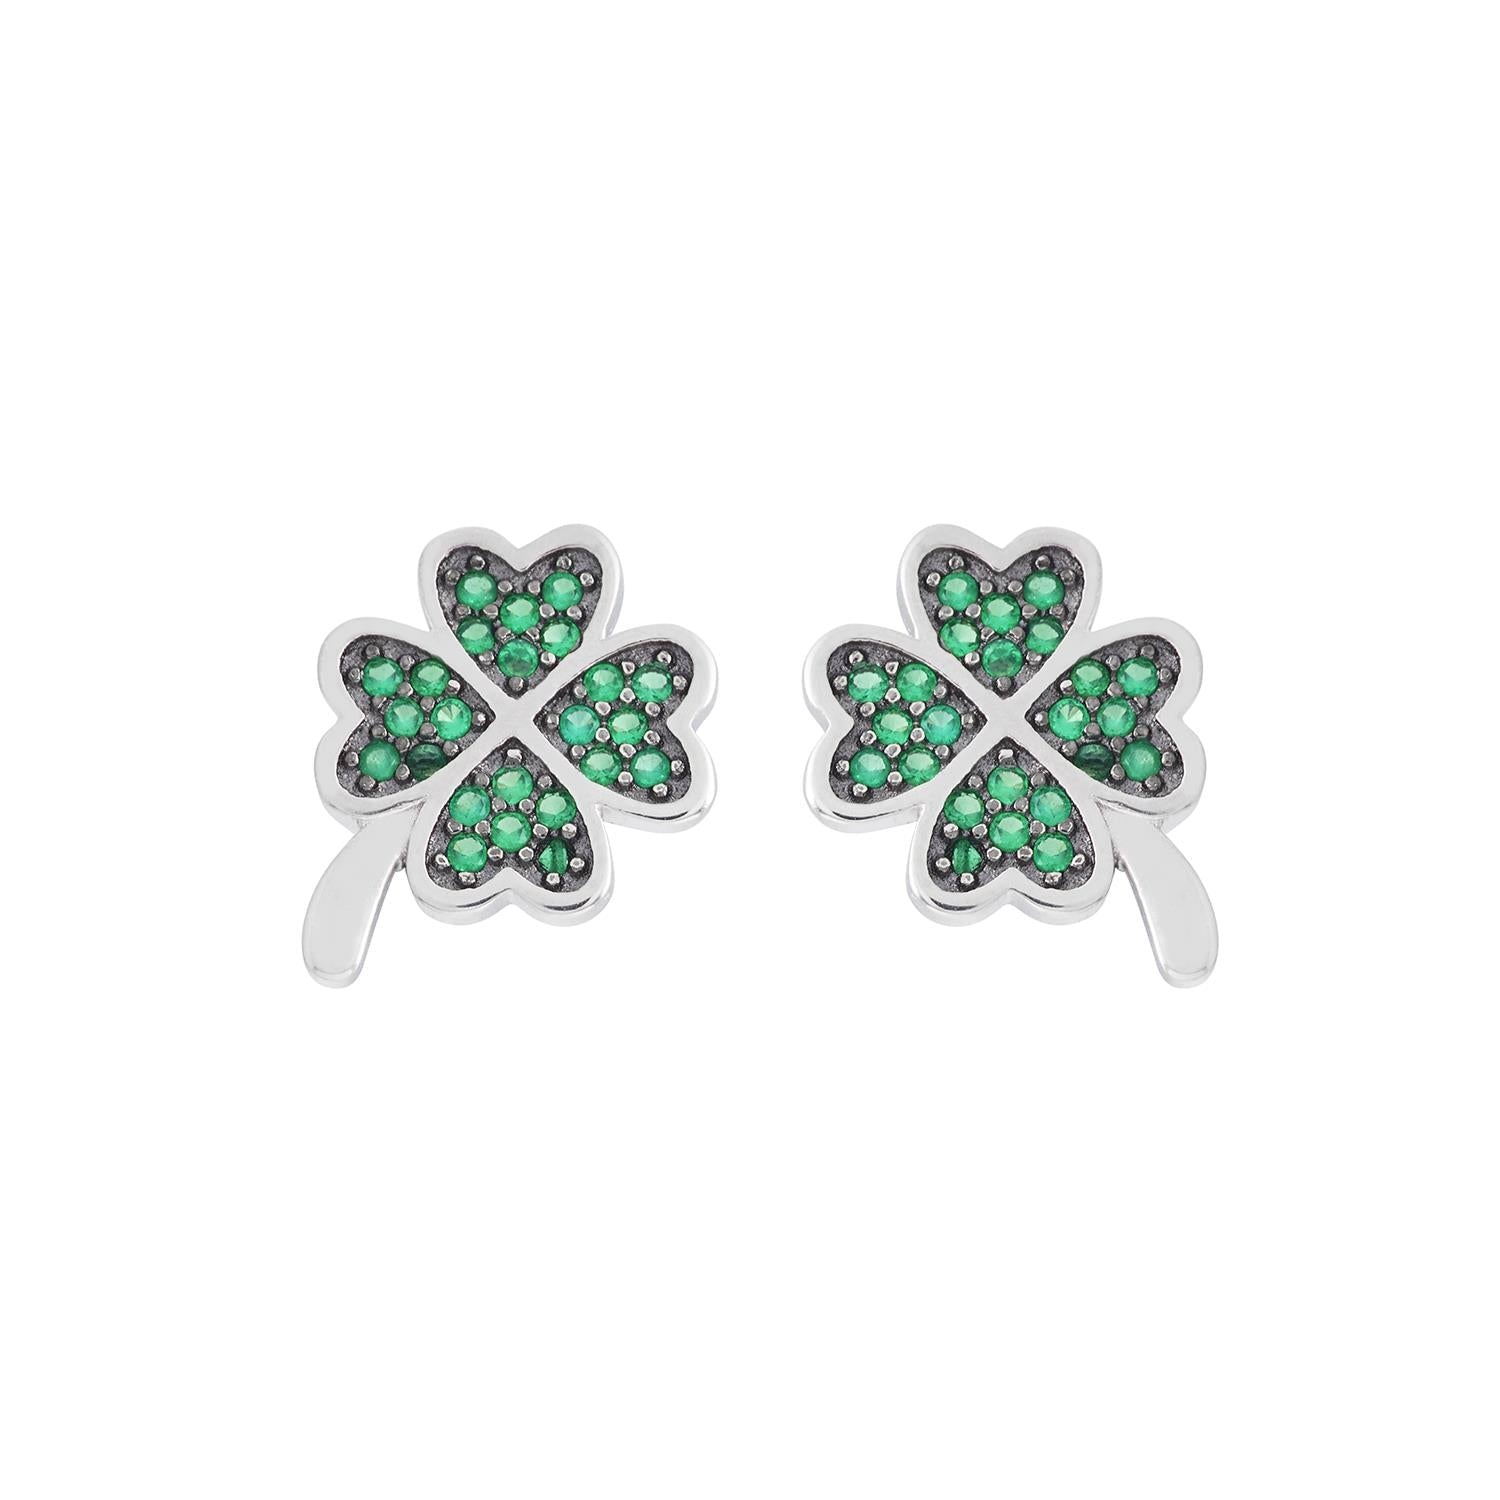 Orecchini AMBROSIA argento quadrifoglio pavé zirconi verdi AAO 243 - bonini-gioielli